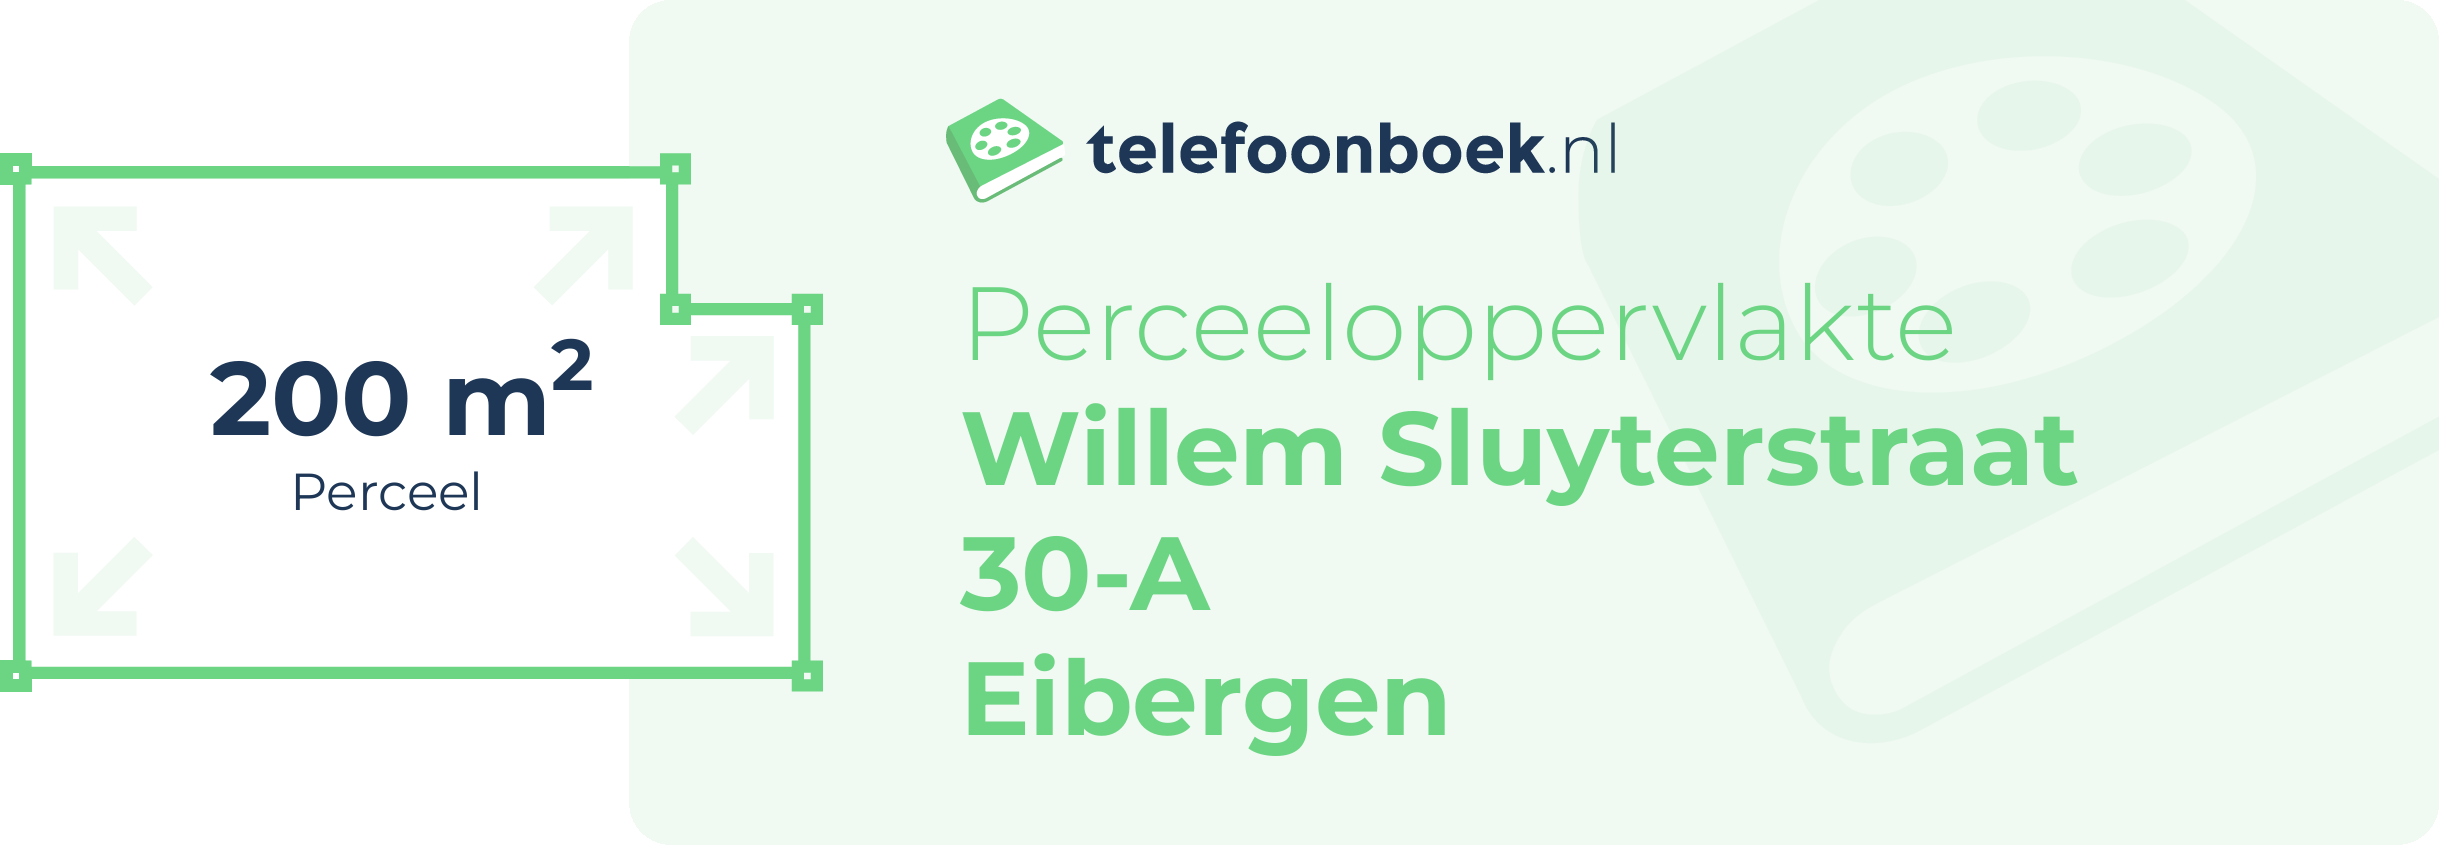 Perceeloppervlakte Willem Sluyterstraat 30-A Eibergen